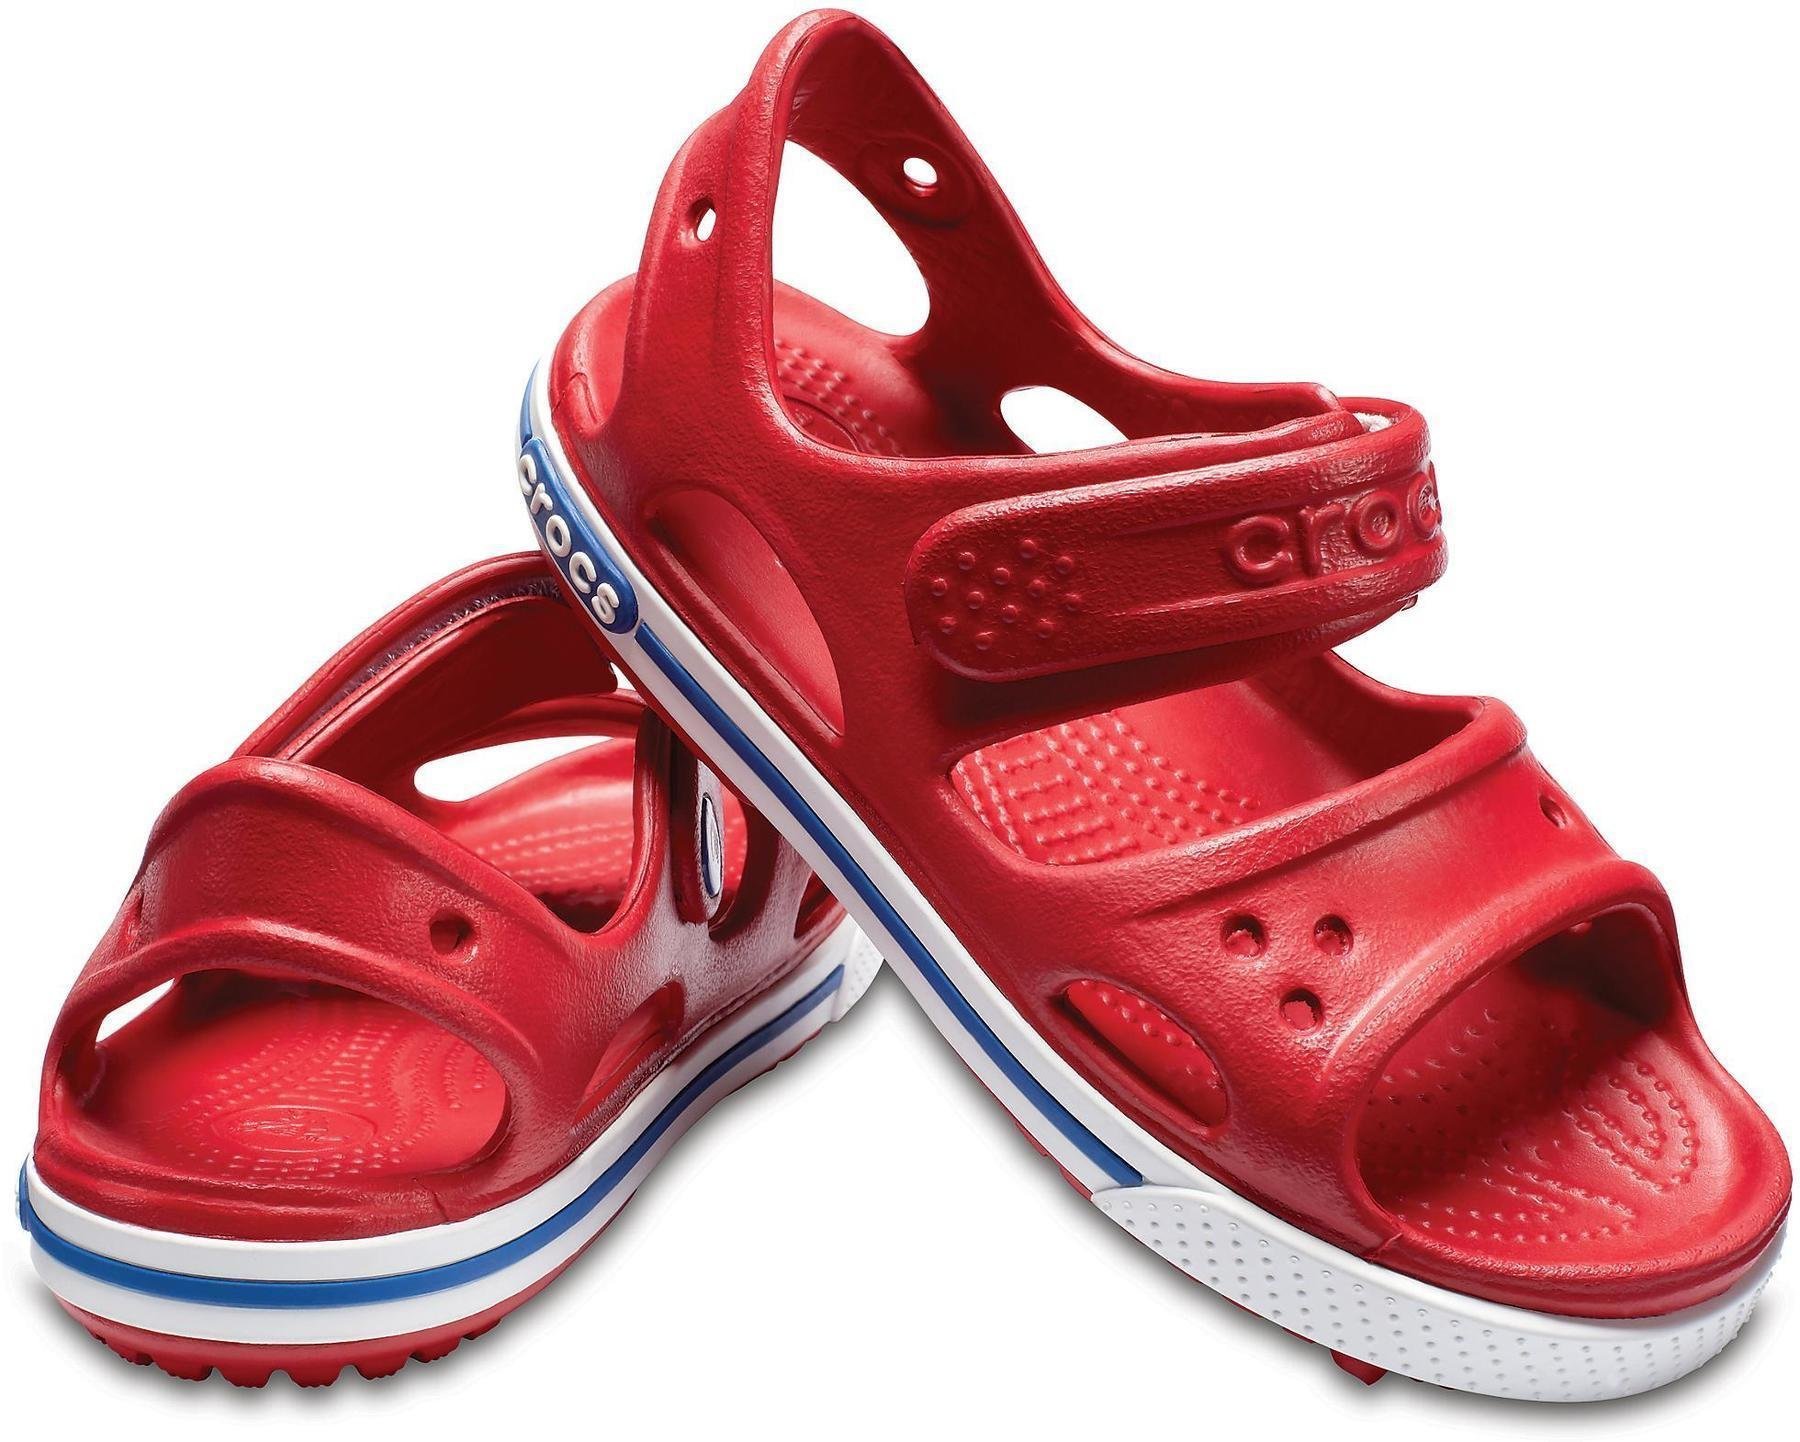 Buty żeglarskie dla dzieci Crocs Preschool Crocband II Sandal Pepper/Blue Jean 20-21